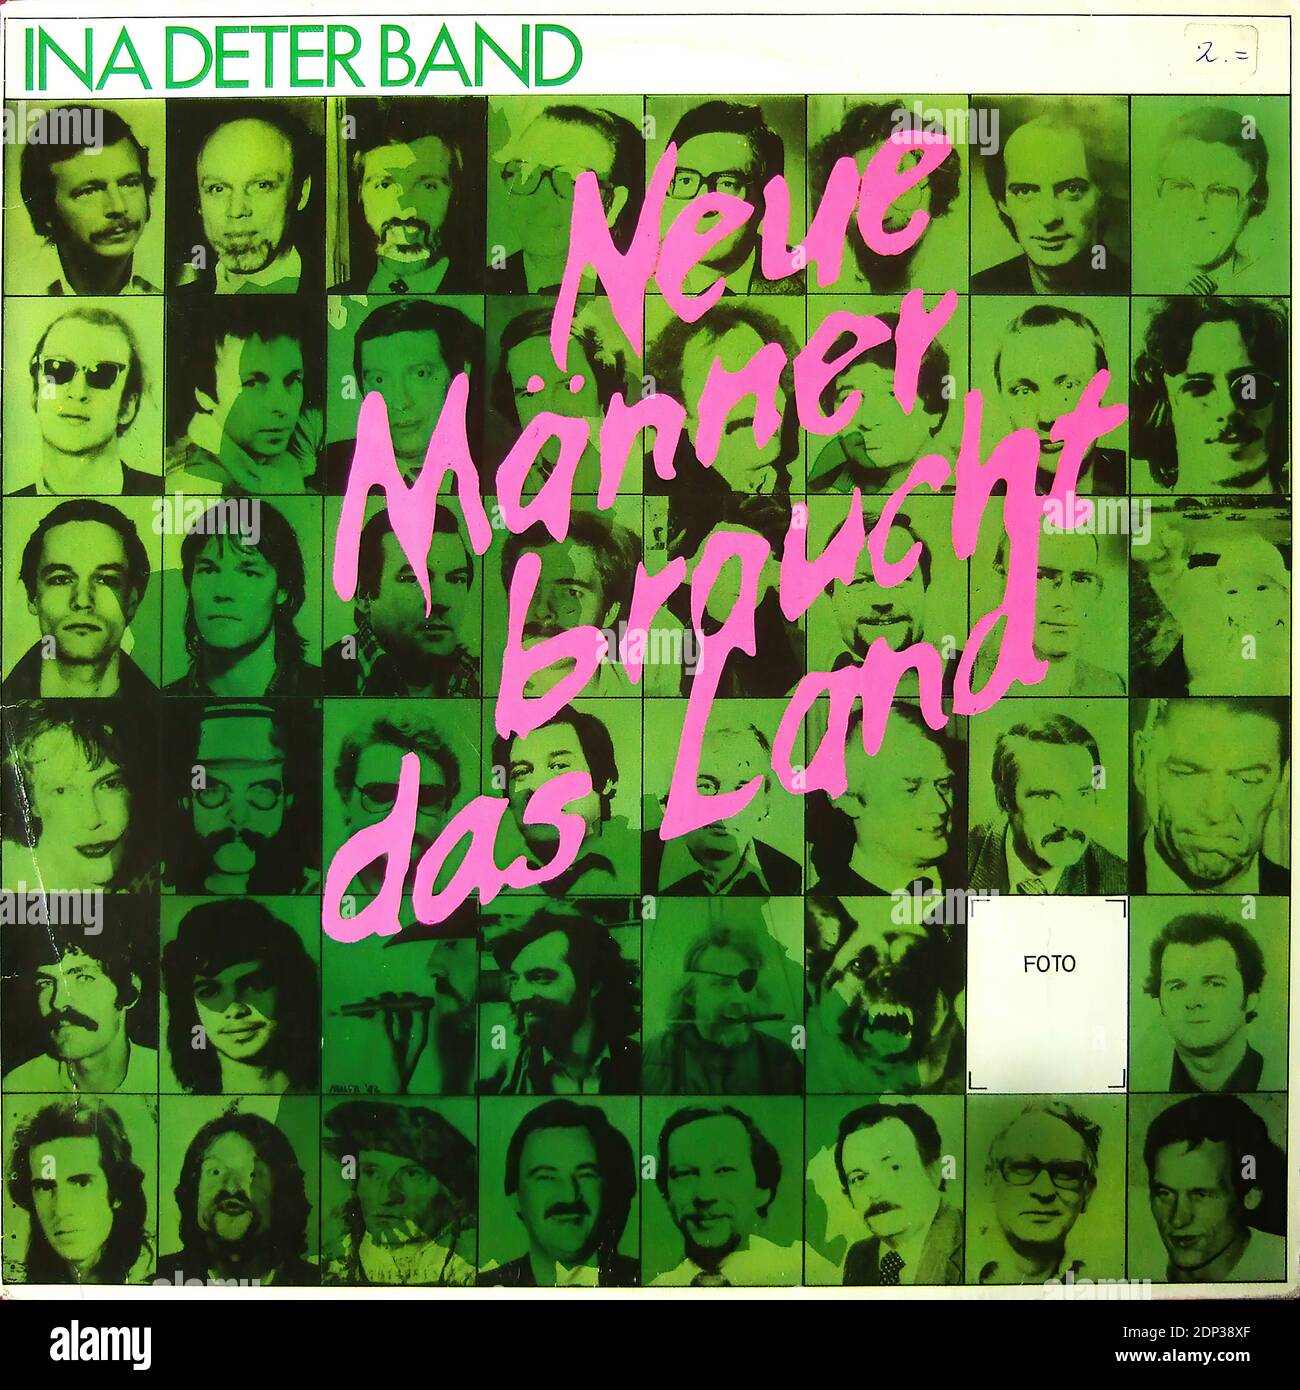 Ina Deter Band - Neue Maenner braucht das Land - Vintage vinyl album cover Stock Photo